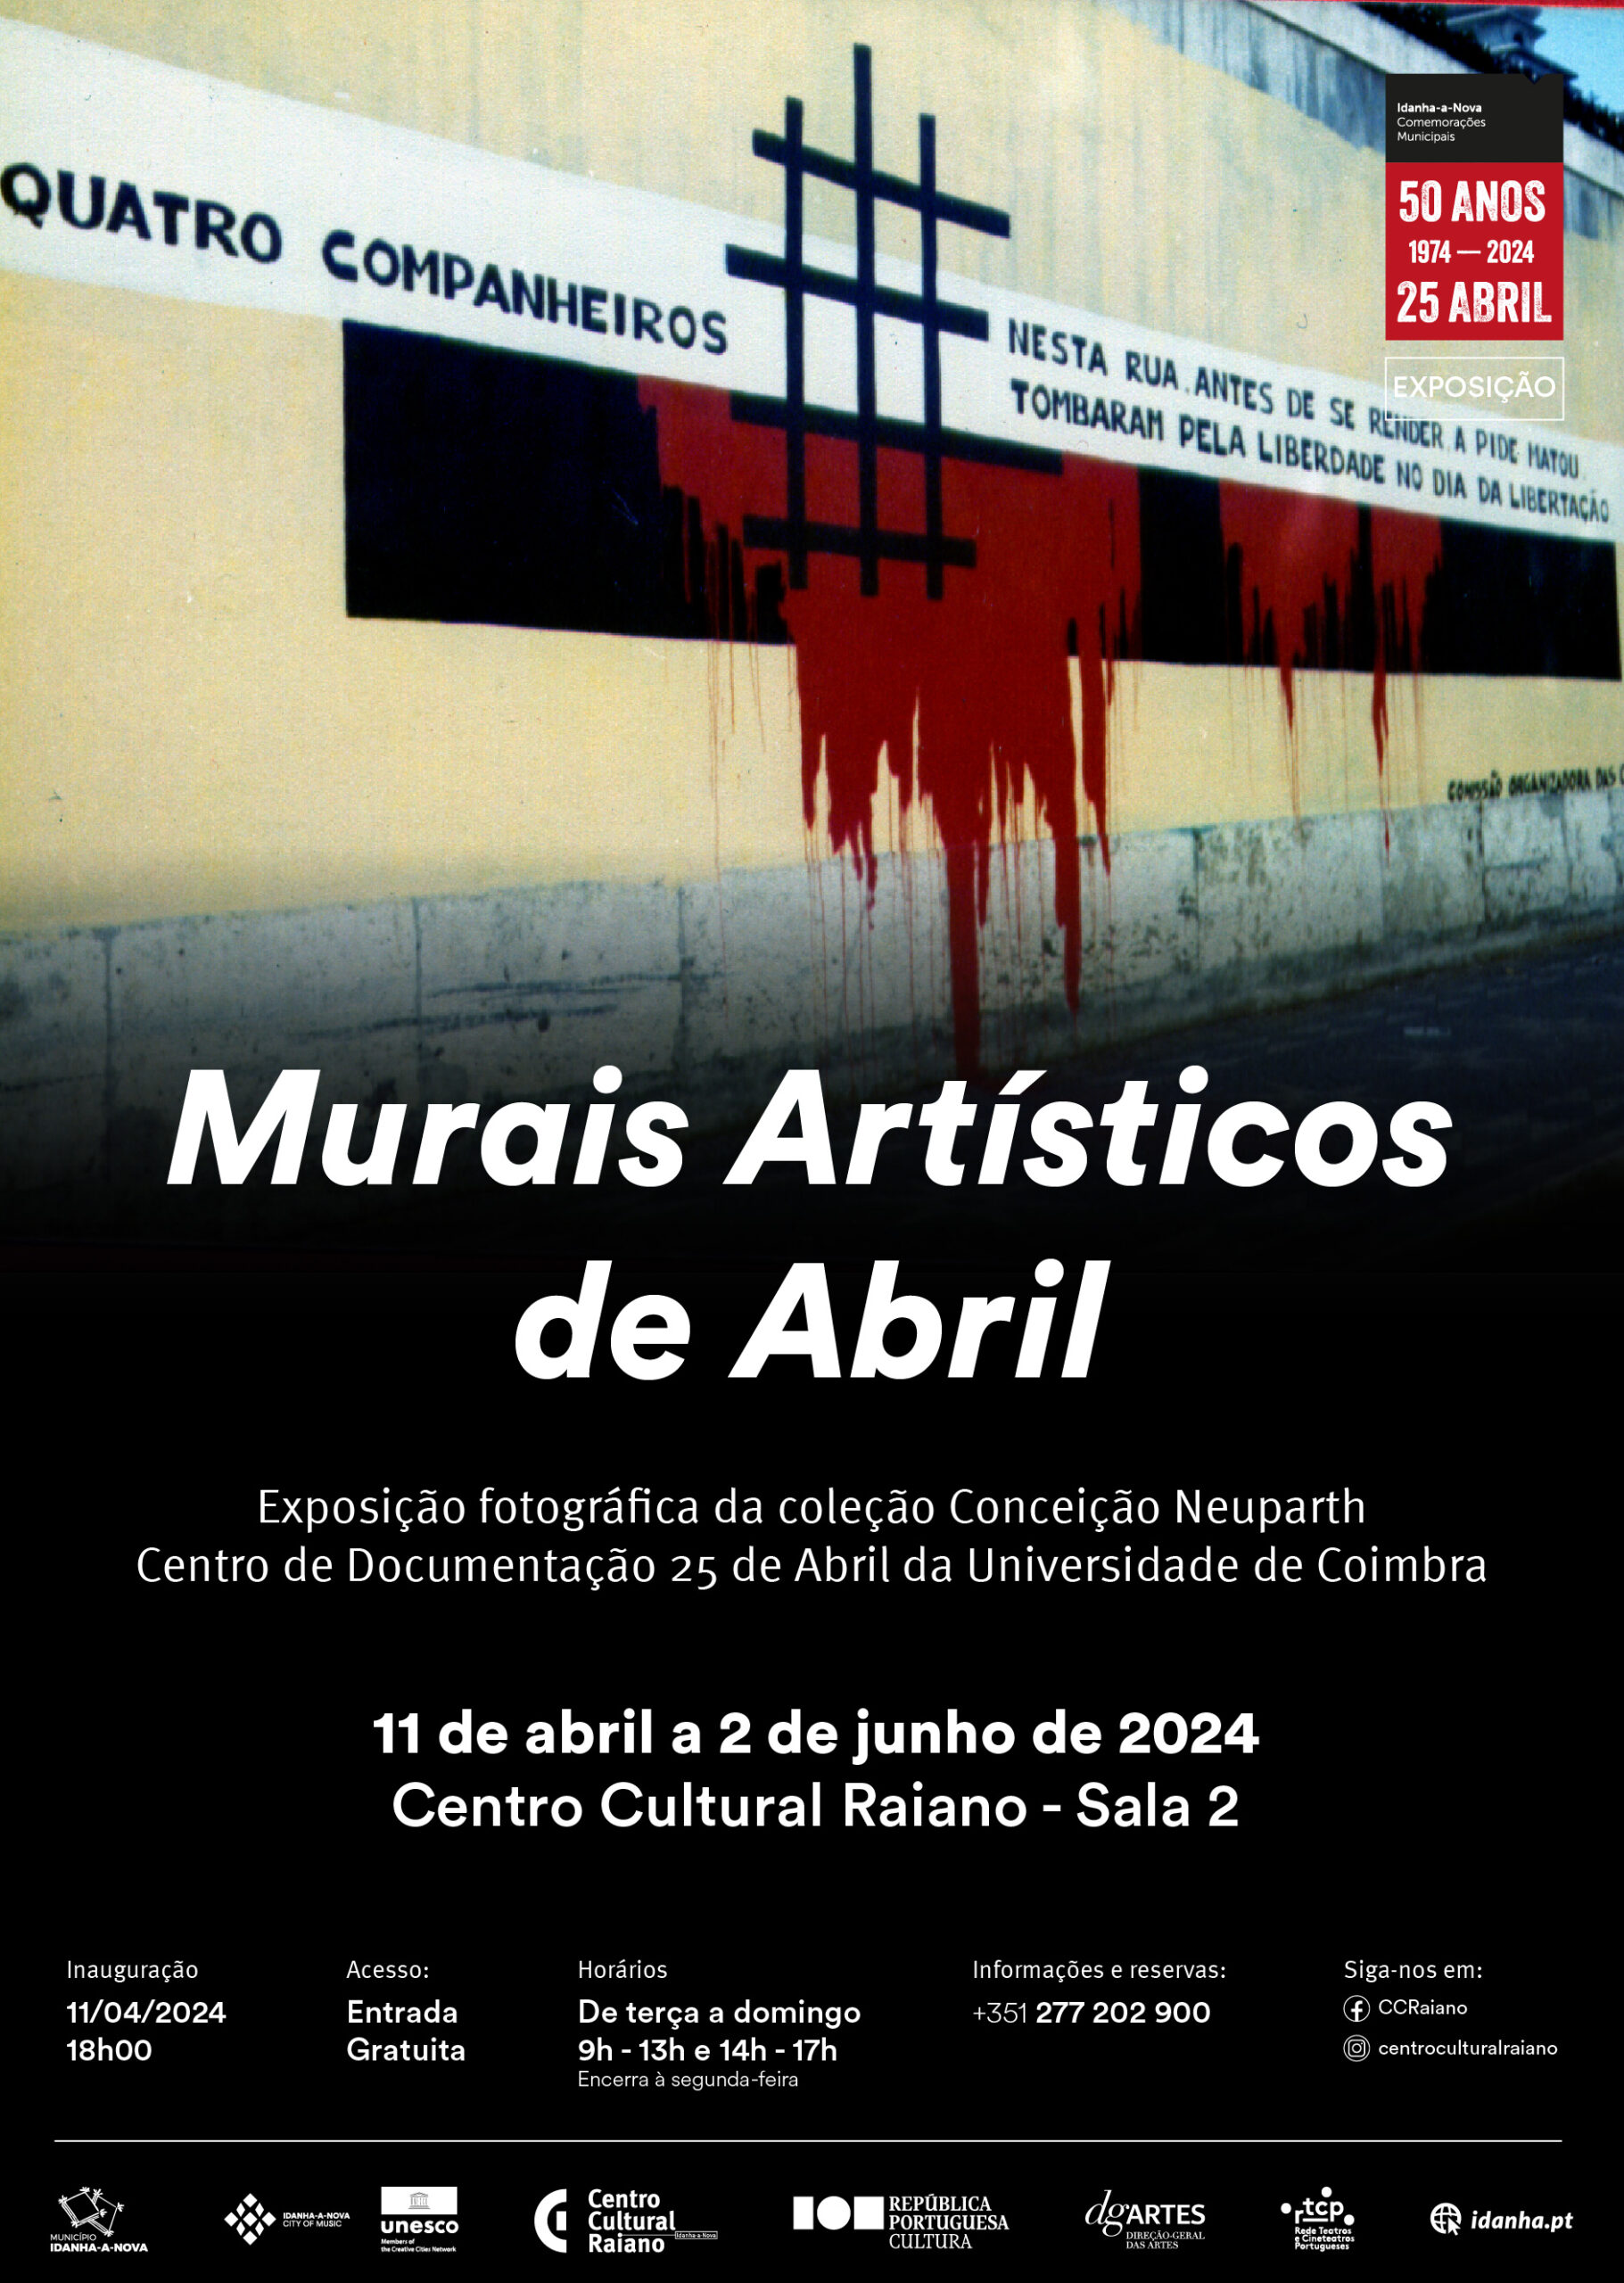 Capa do Evento Murais Artísticos de Abril - Coleção Conceição Neuparth